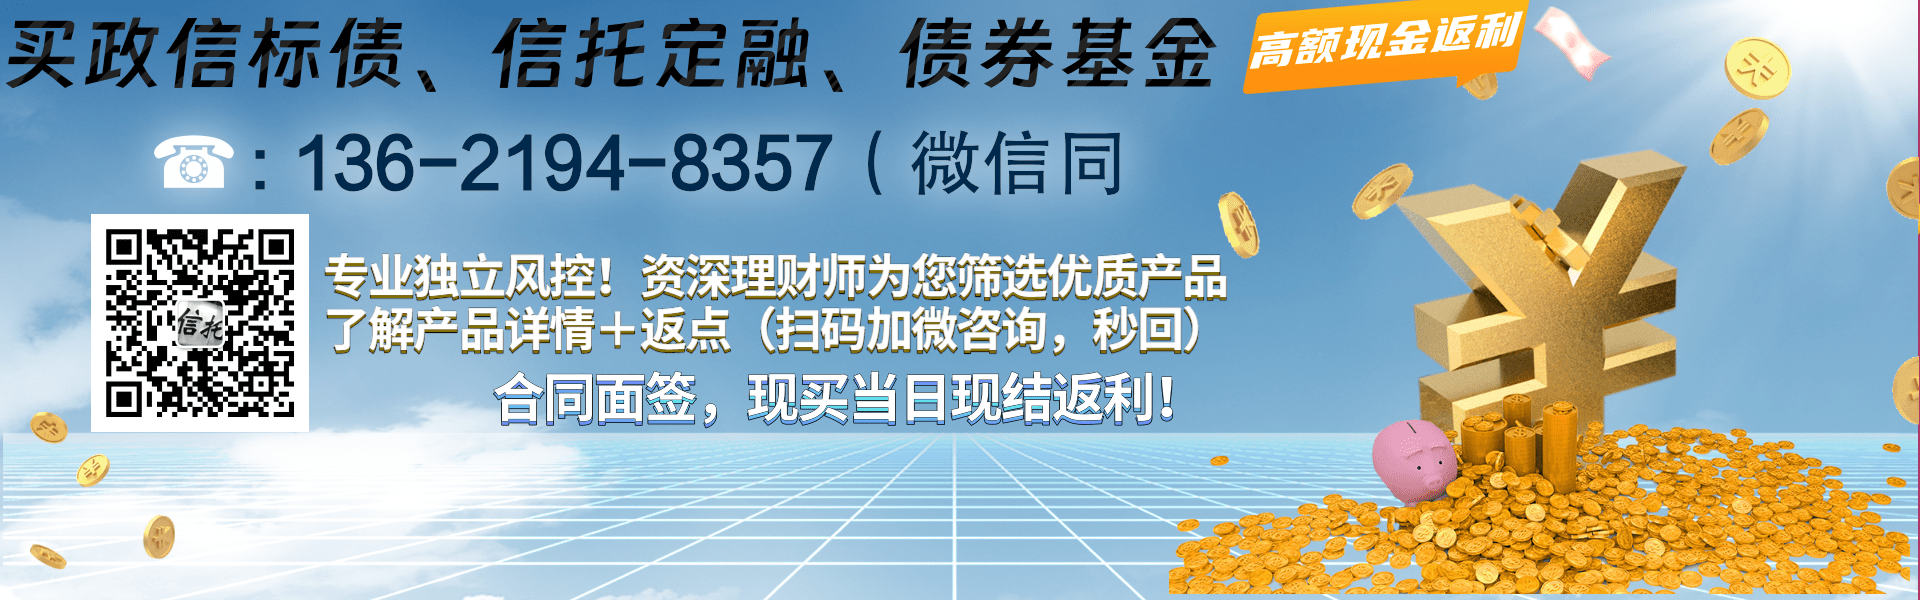 眉山市鑫东商贸2024年一般债权拍卖